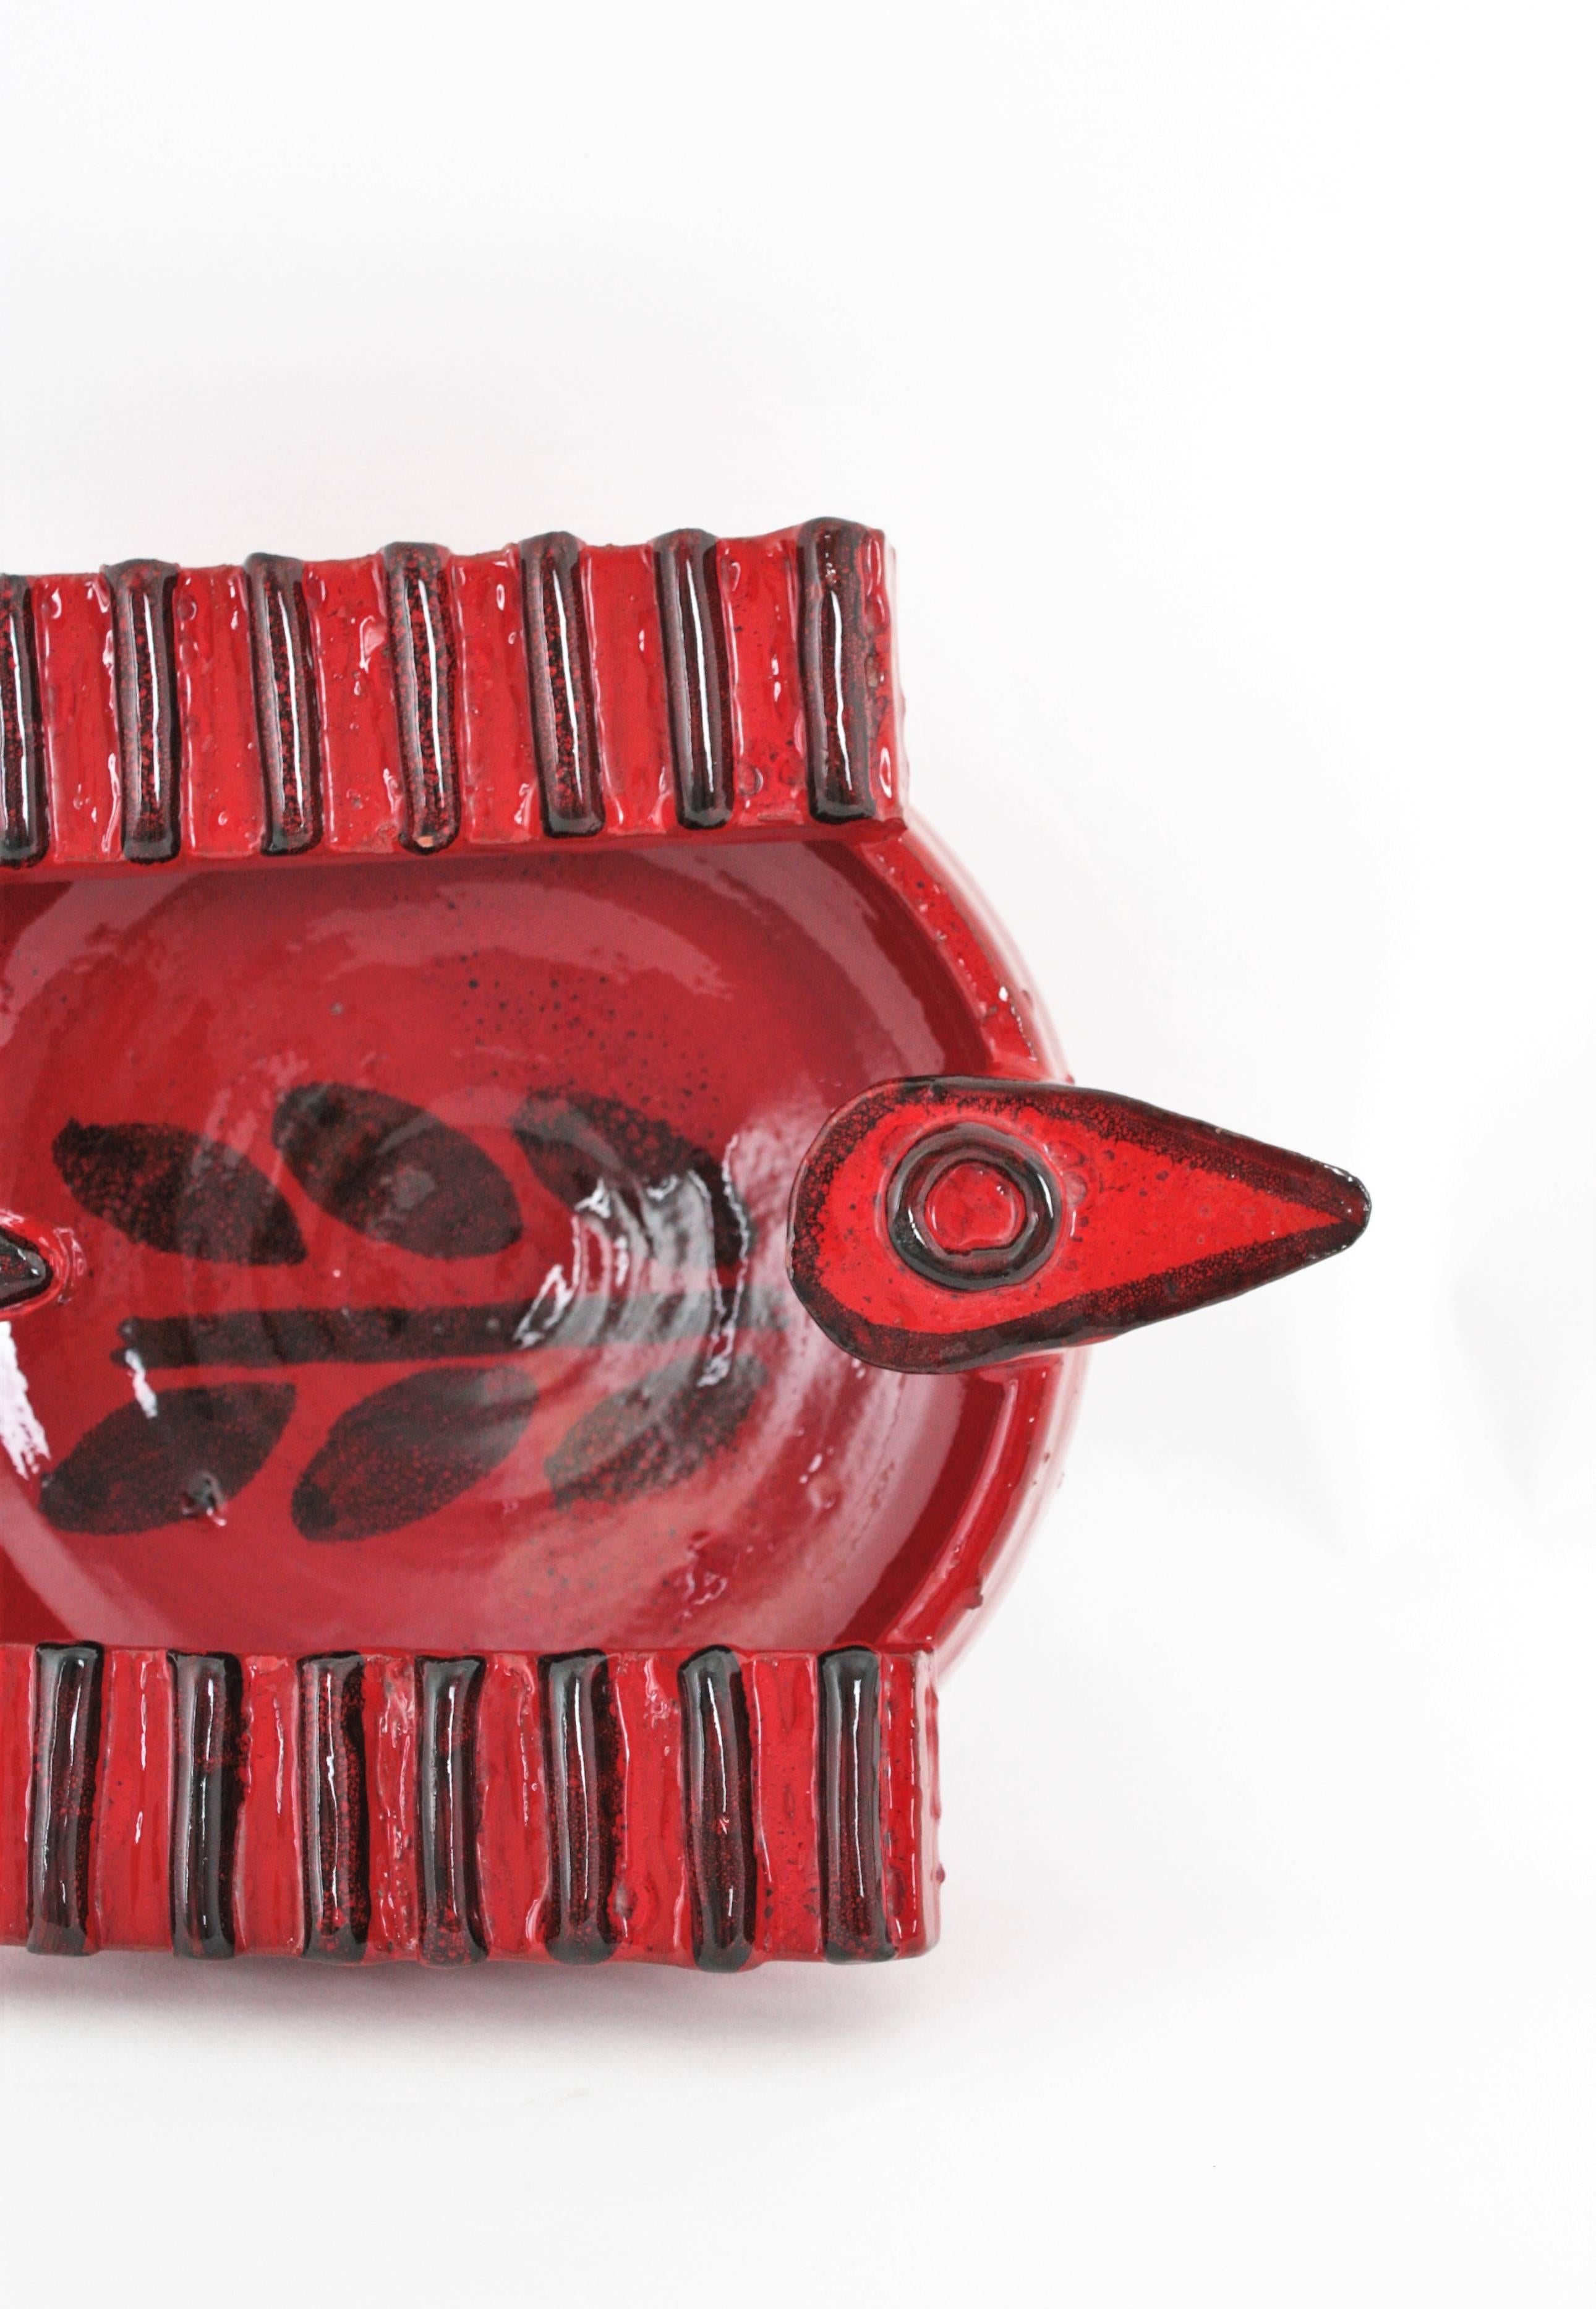 Roter Aschenbecher/Schale aus Keramik in Vogelform aus der spanischen Picasso-Ära, 1950er Jahre (Moderne der Mitte des Jahrhunderts)